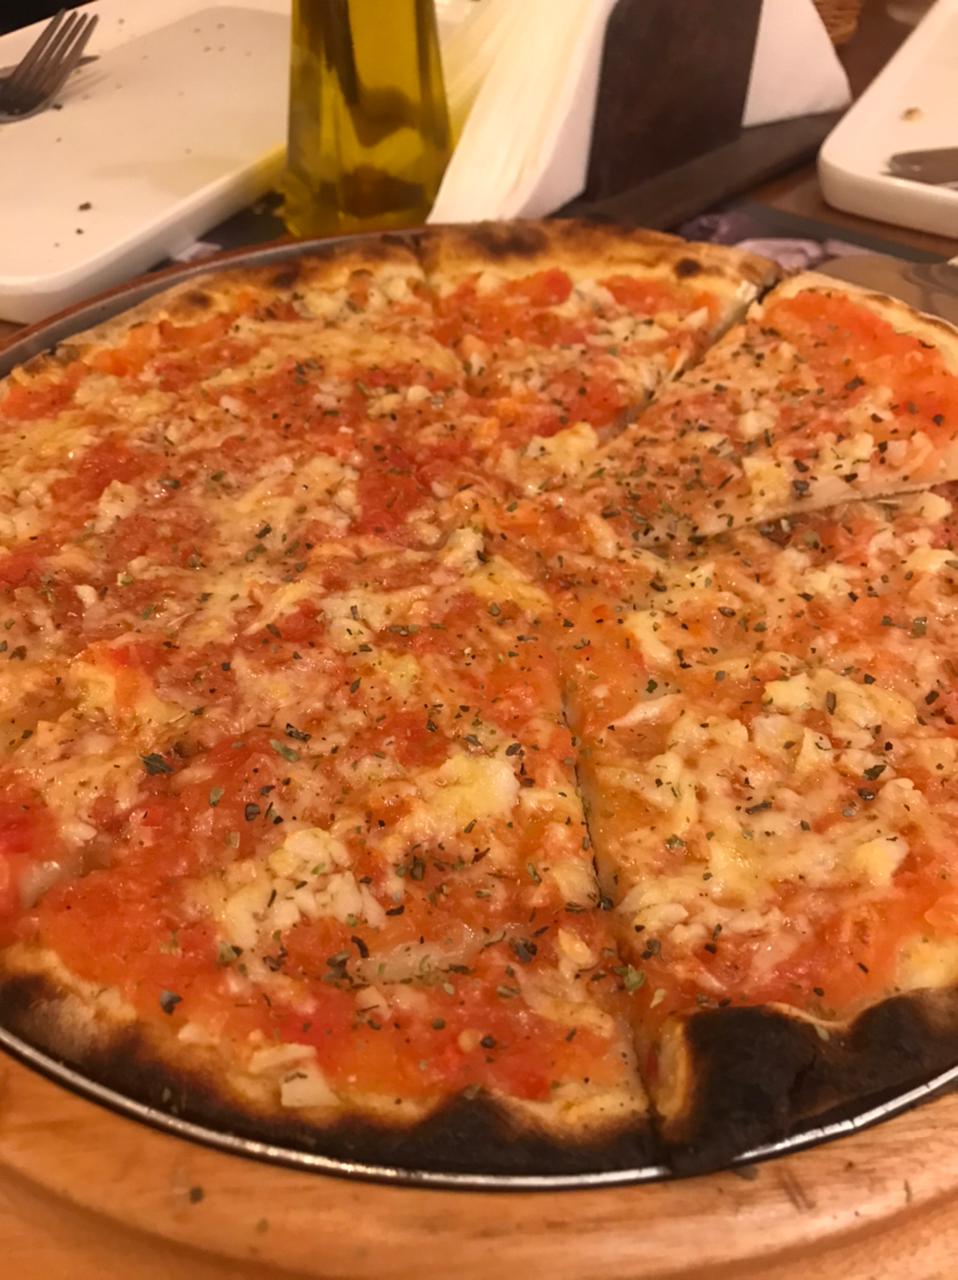 Micheluccio Pizzas